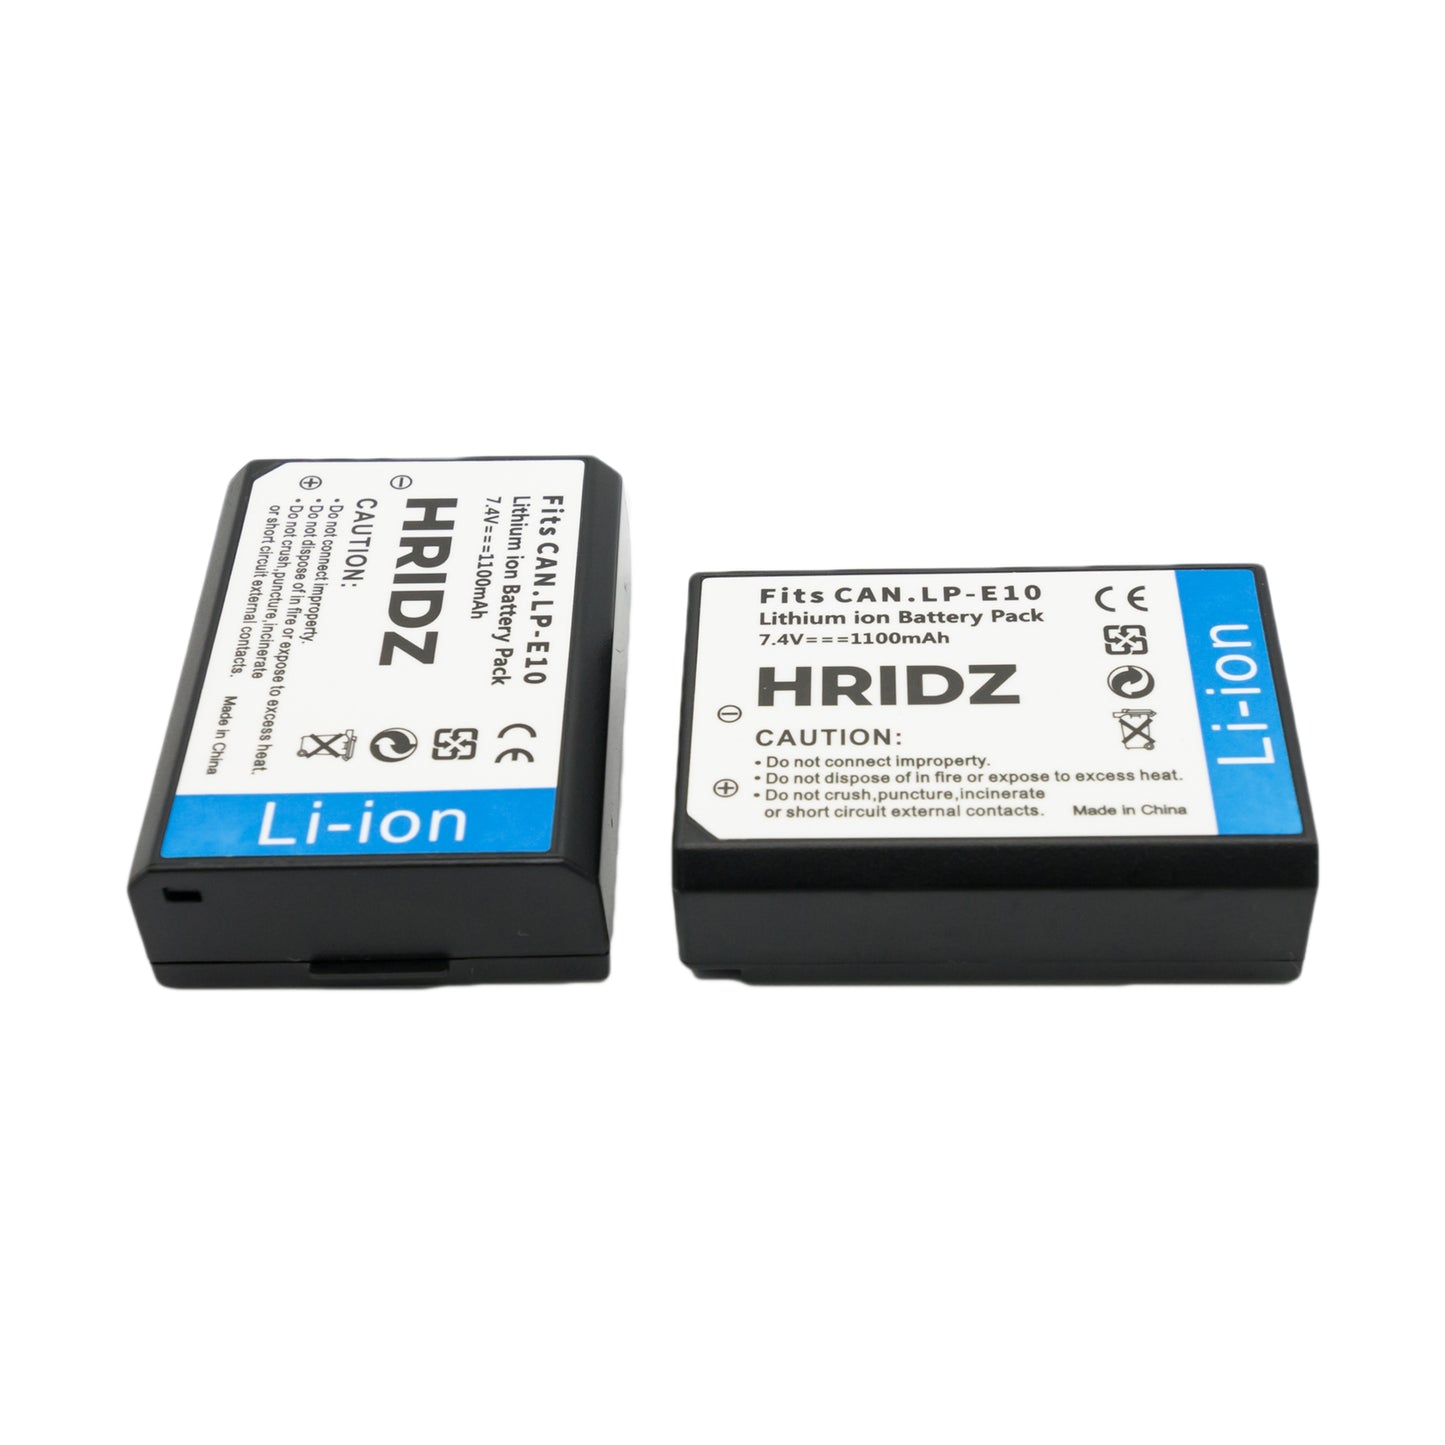 Hridz LP-E10 battery pack for Canon EOS 3000D EOS 1500D EOS 1300D EOS 1200D EOS 1100D